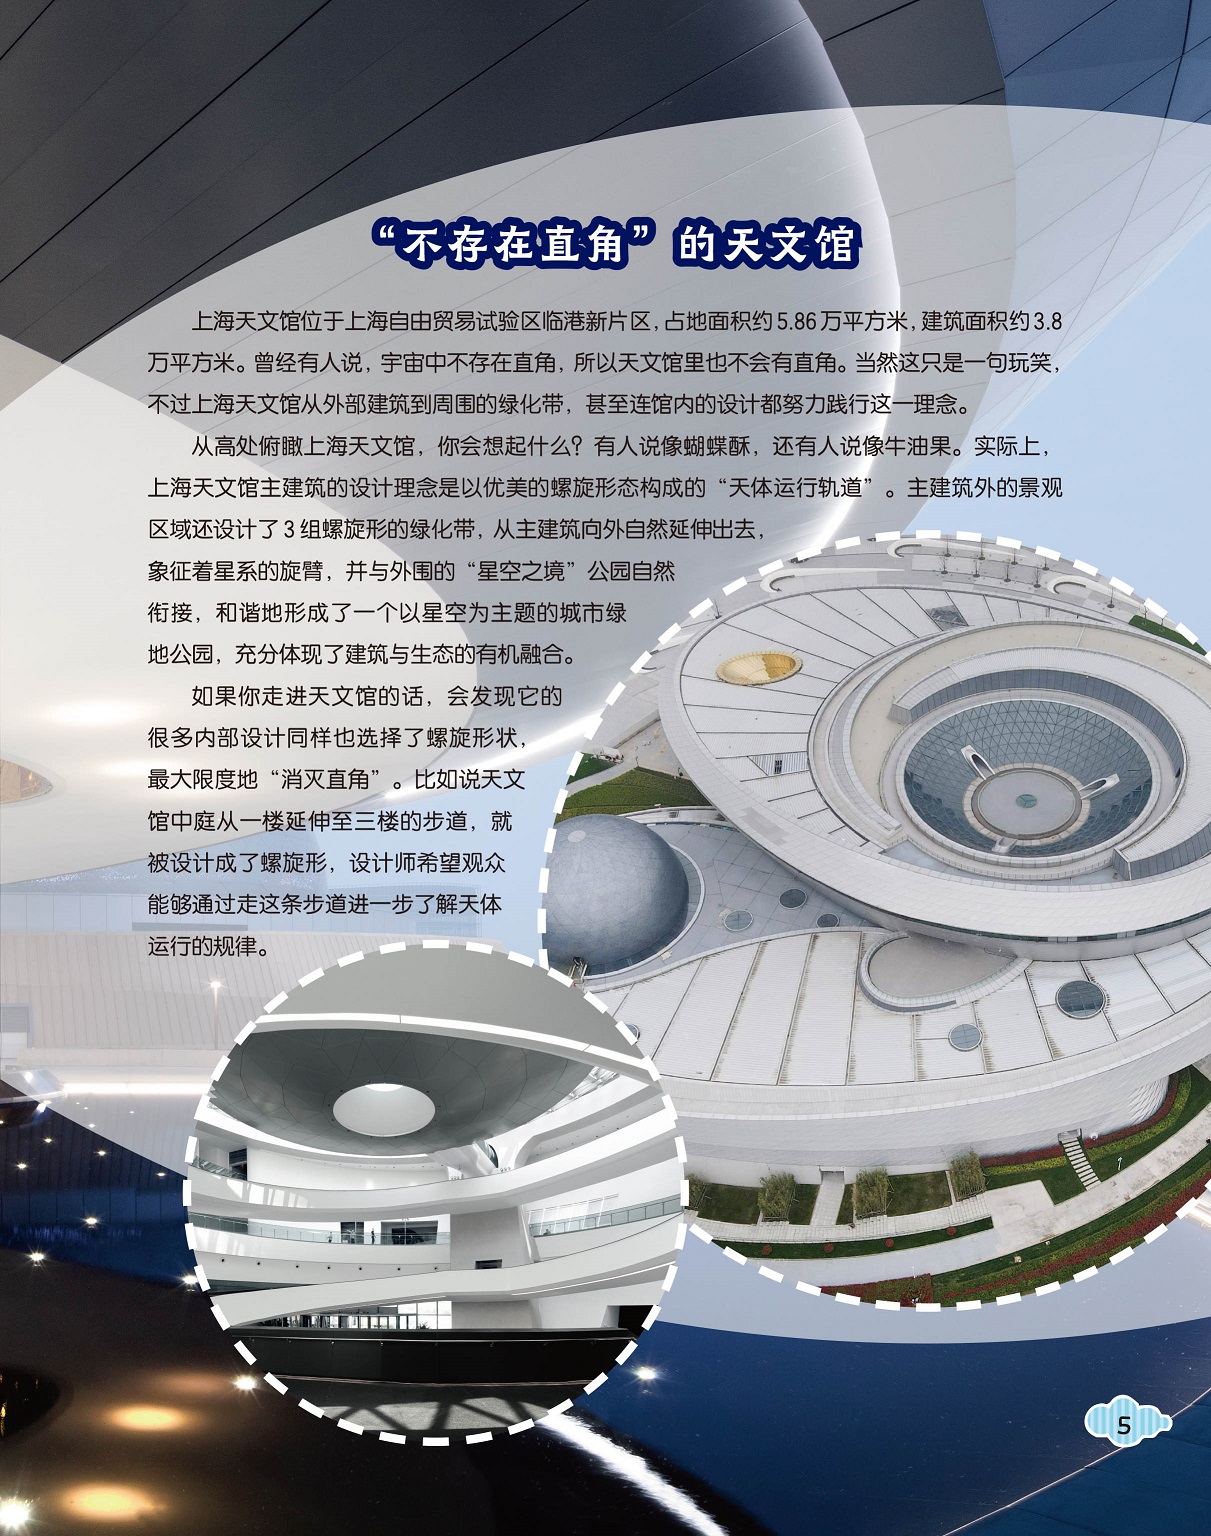 上海天文馆位于自由贸易试验区,内部设计螺旋形状